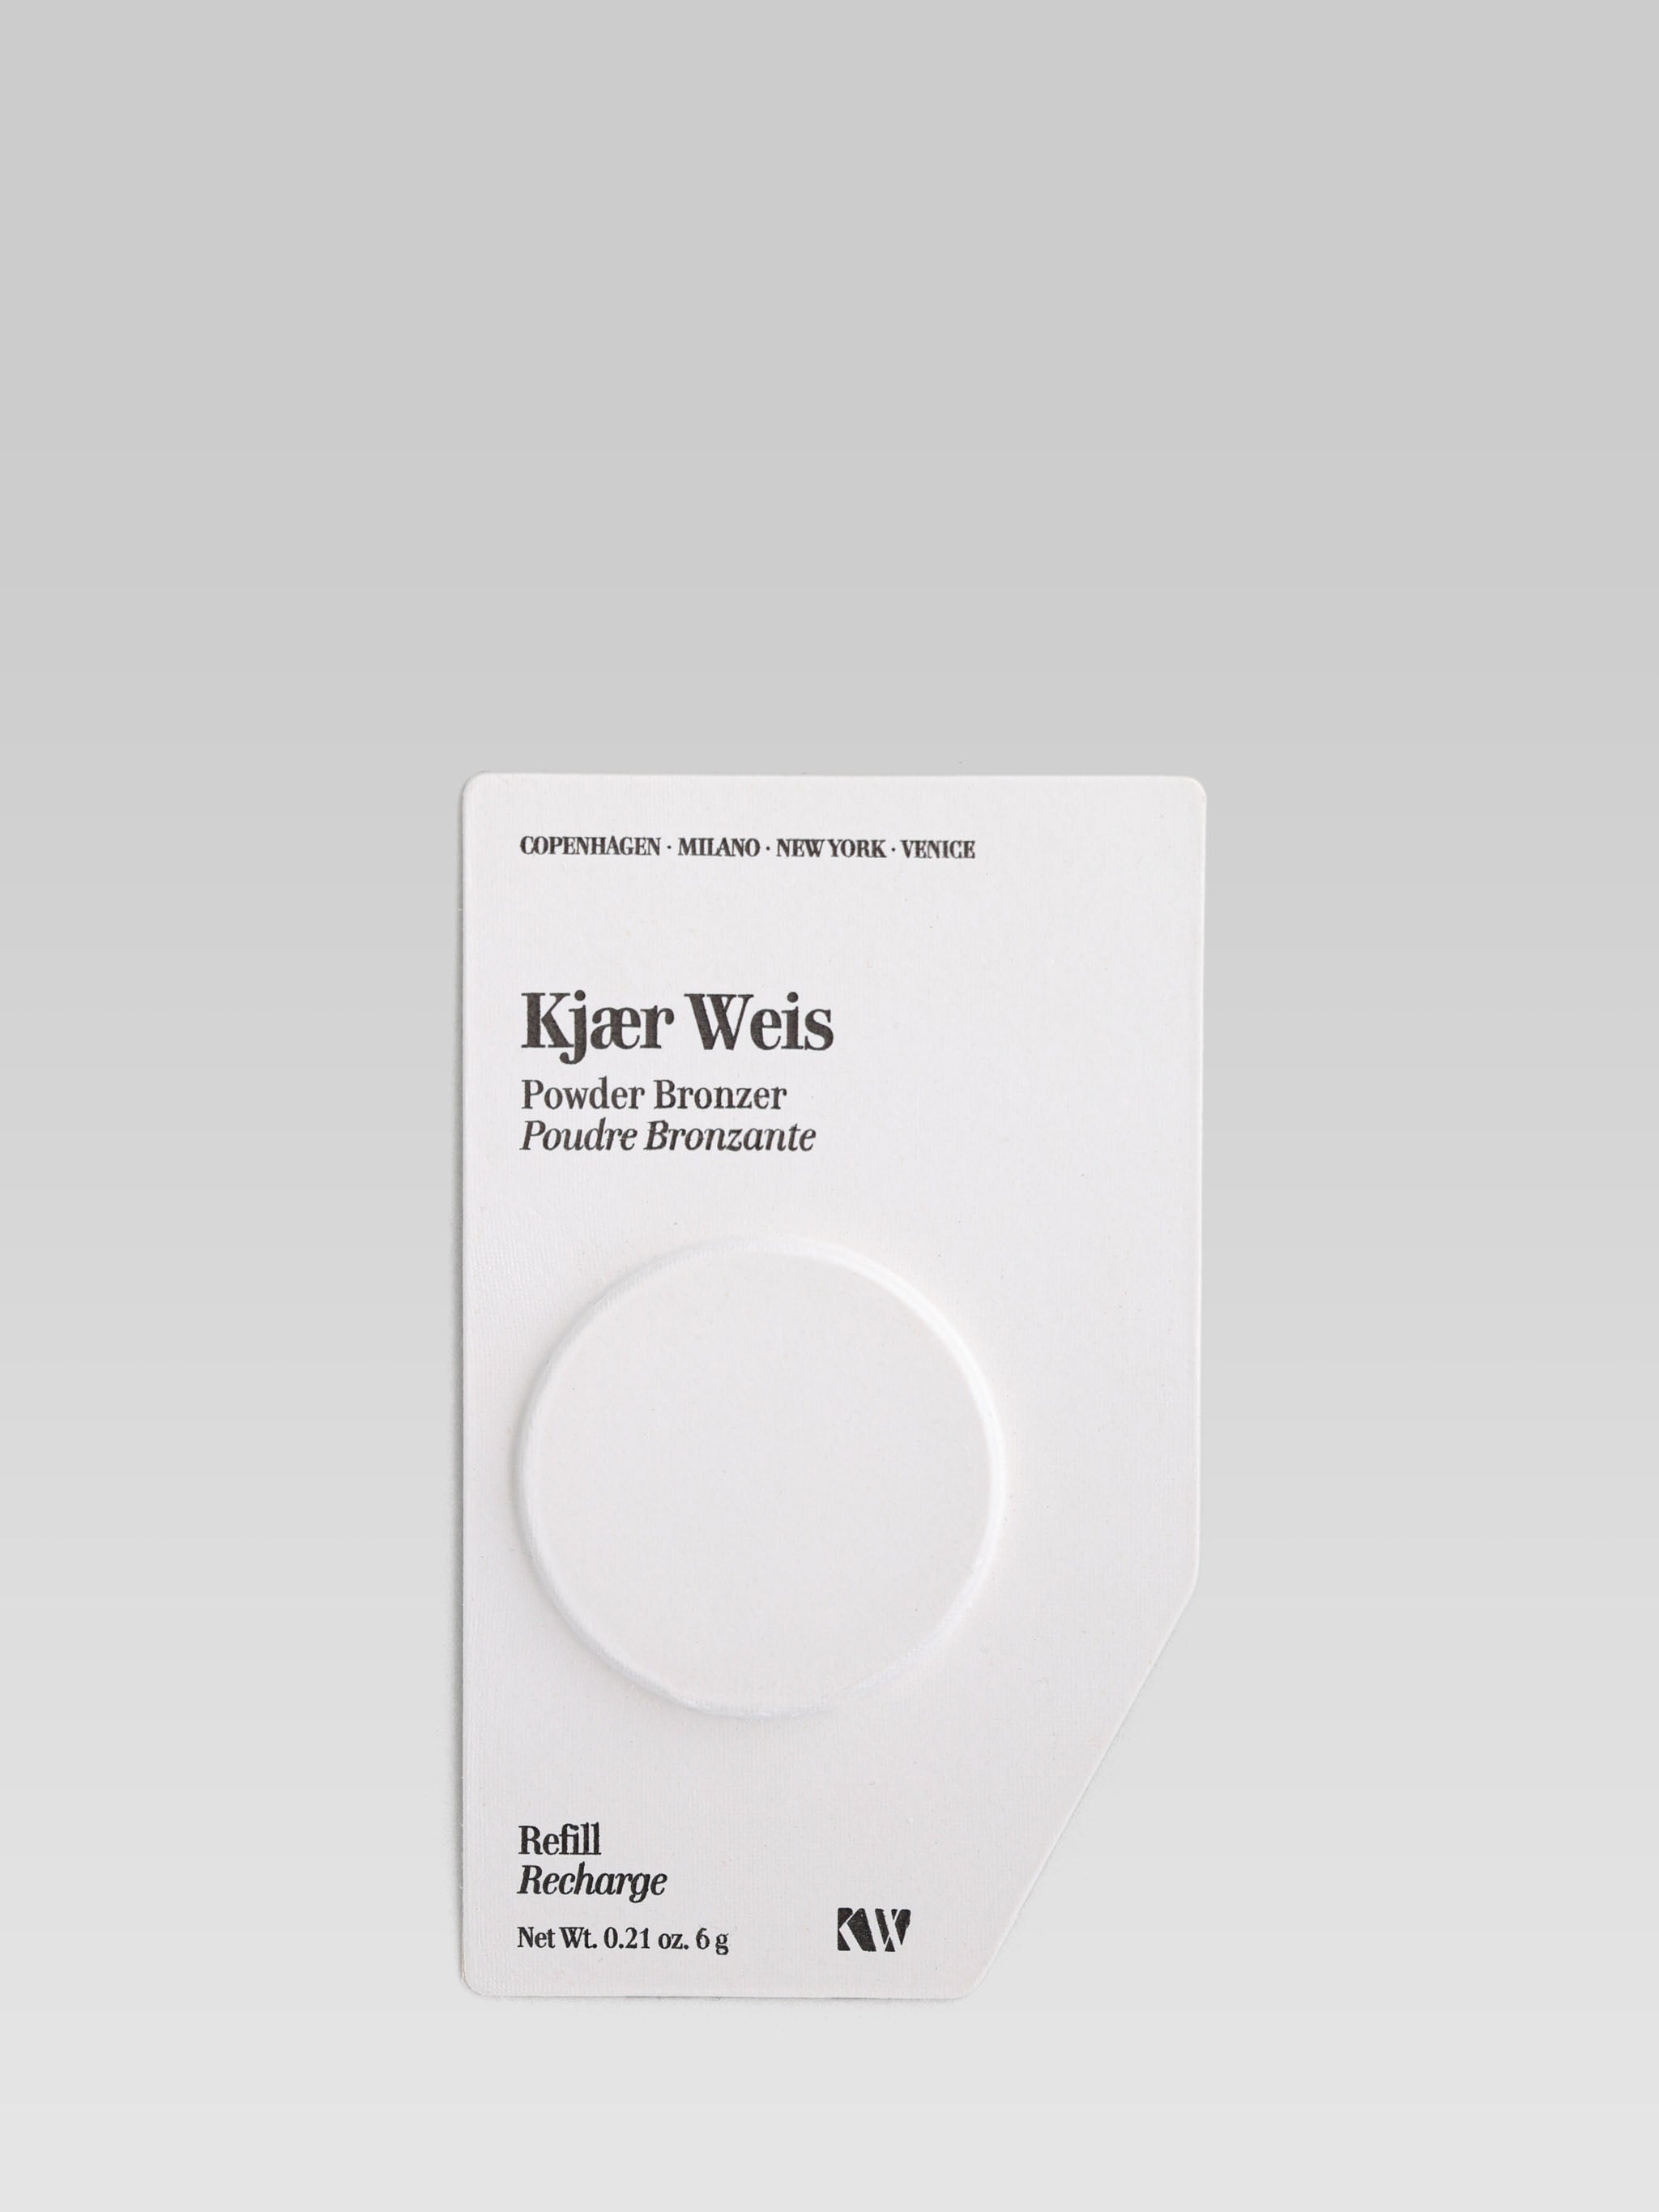 Kjaer Weis Powder Bronzer Refill product shot